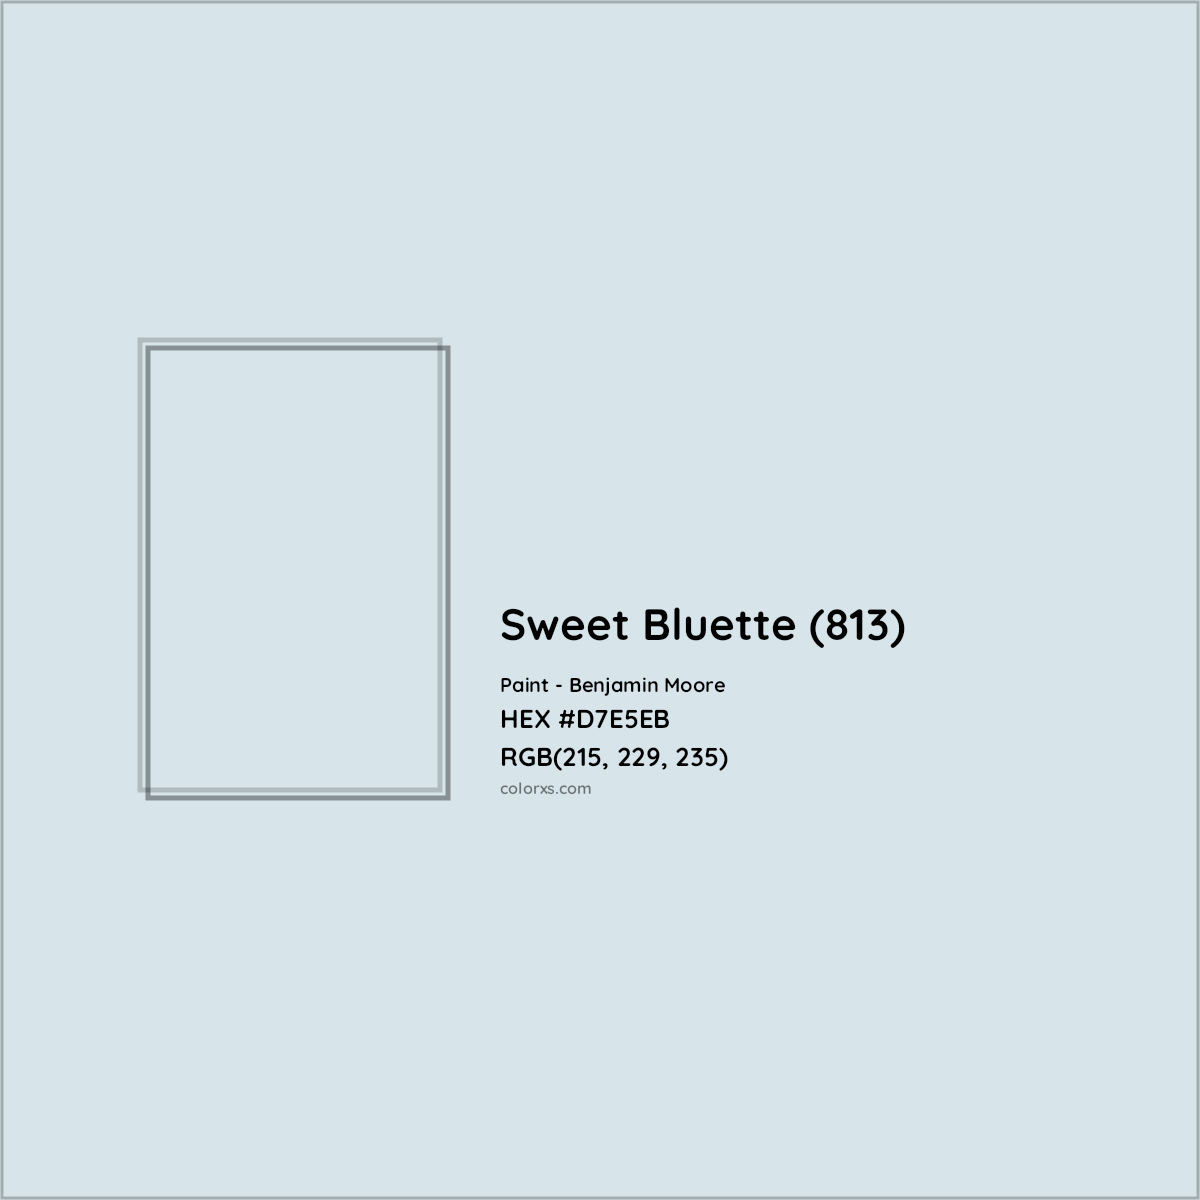 HEX #D7E5EB Sweet Bluette (813) Paint Benjamin Moore - Color Code